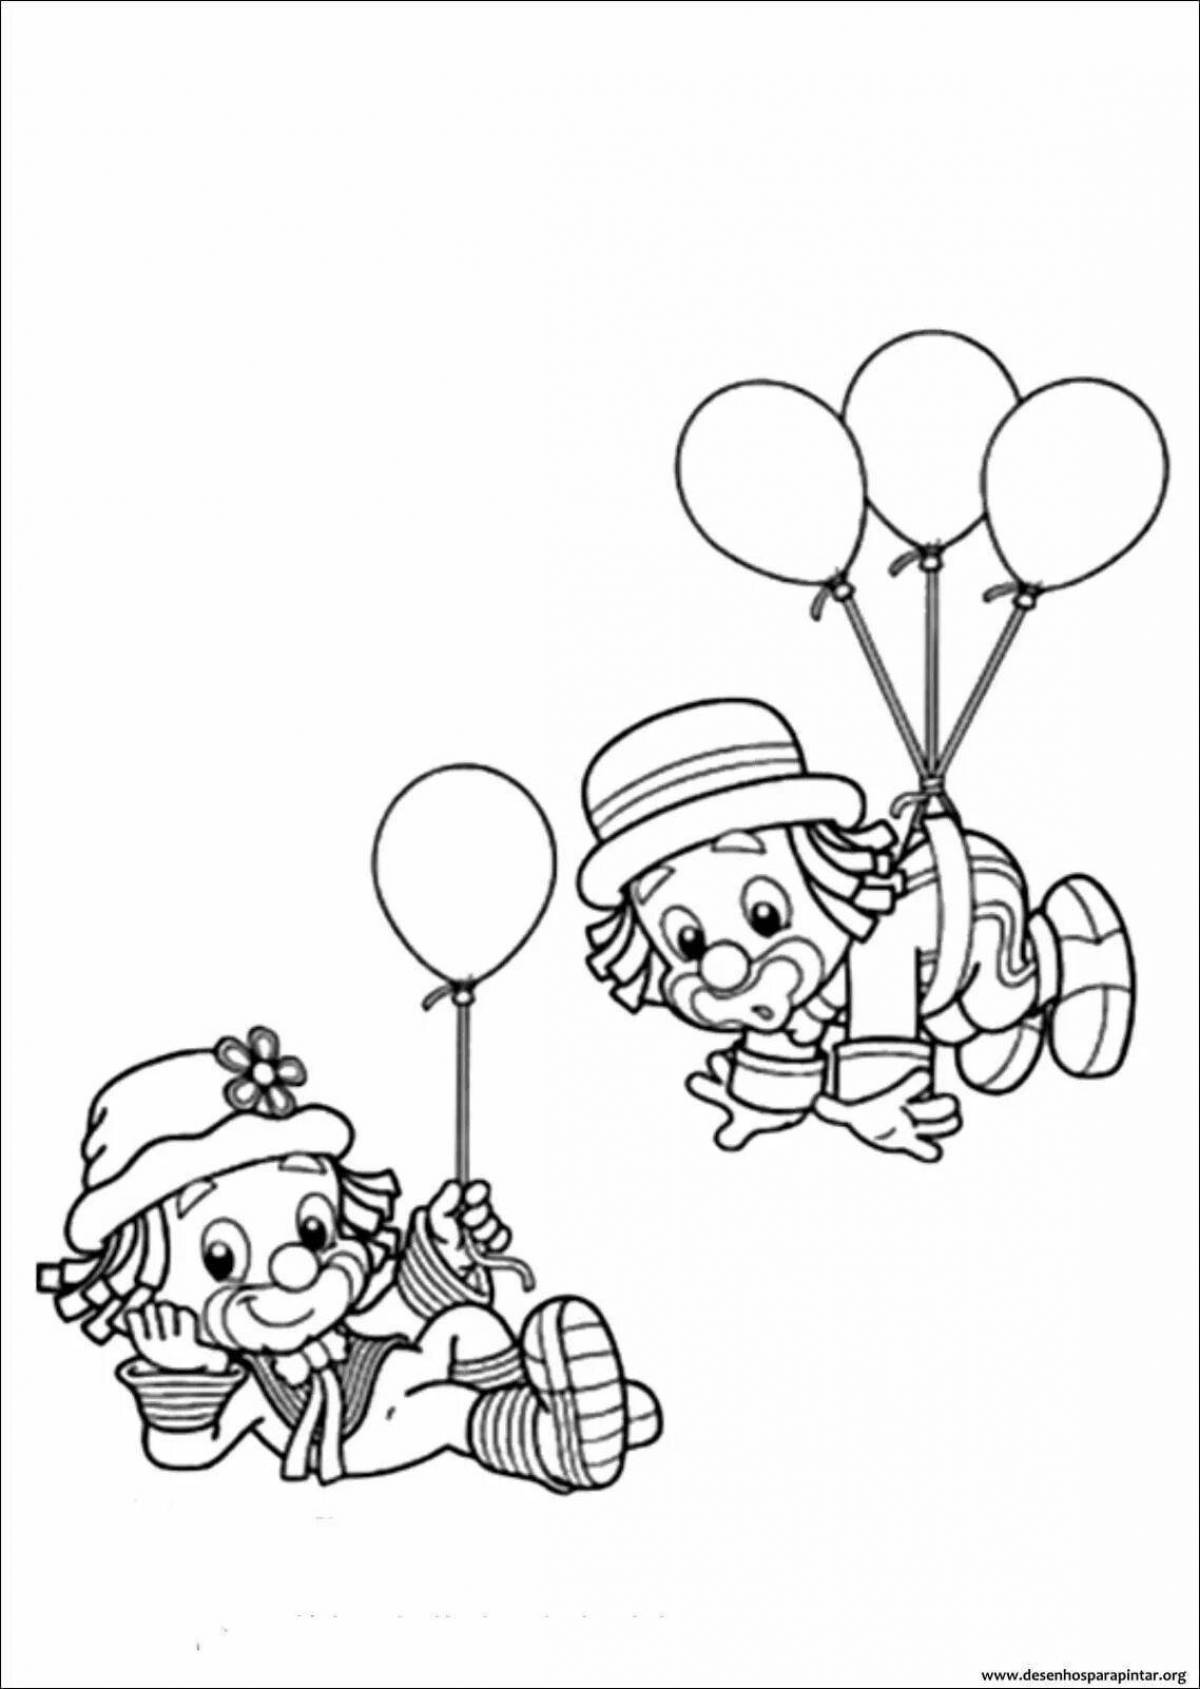 Яркий клоун с воздушными шарами